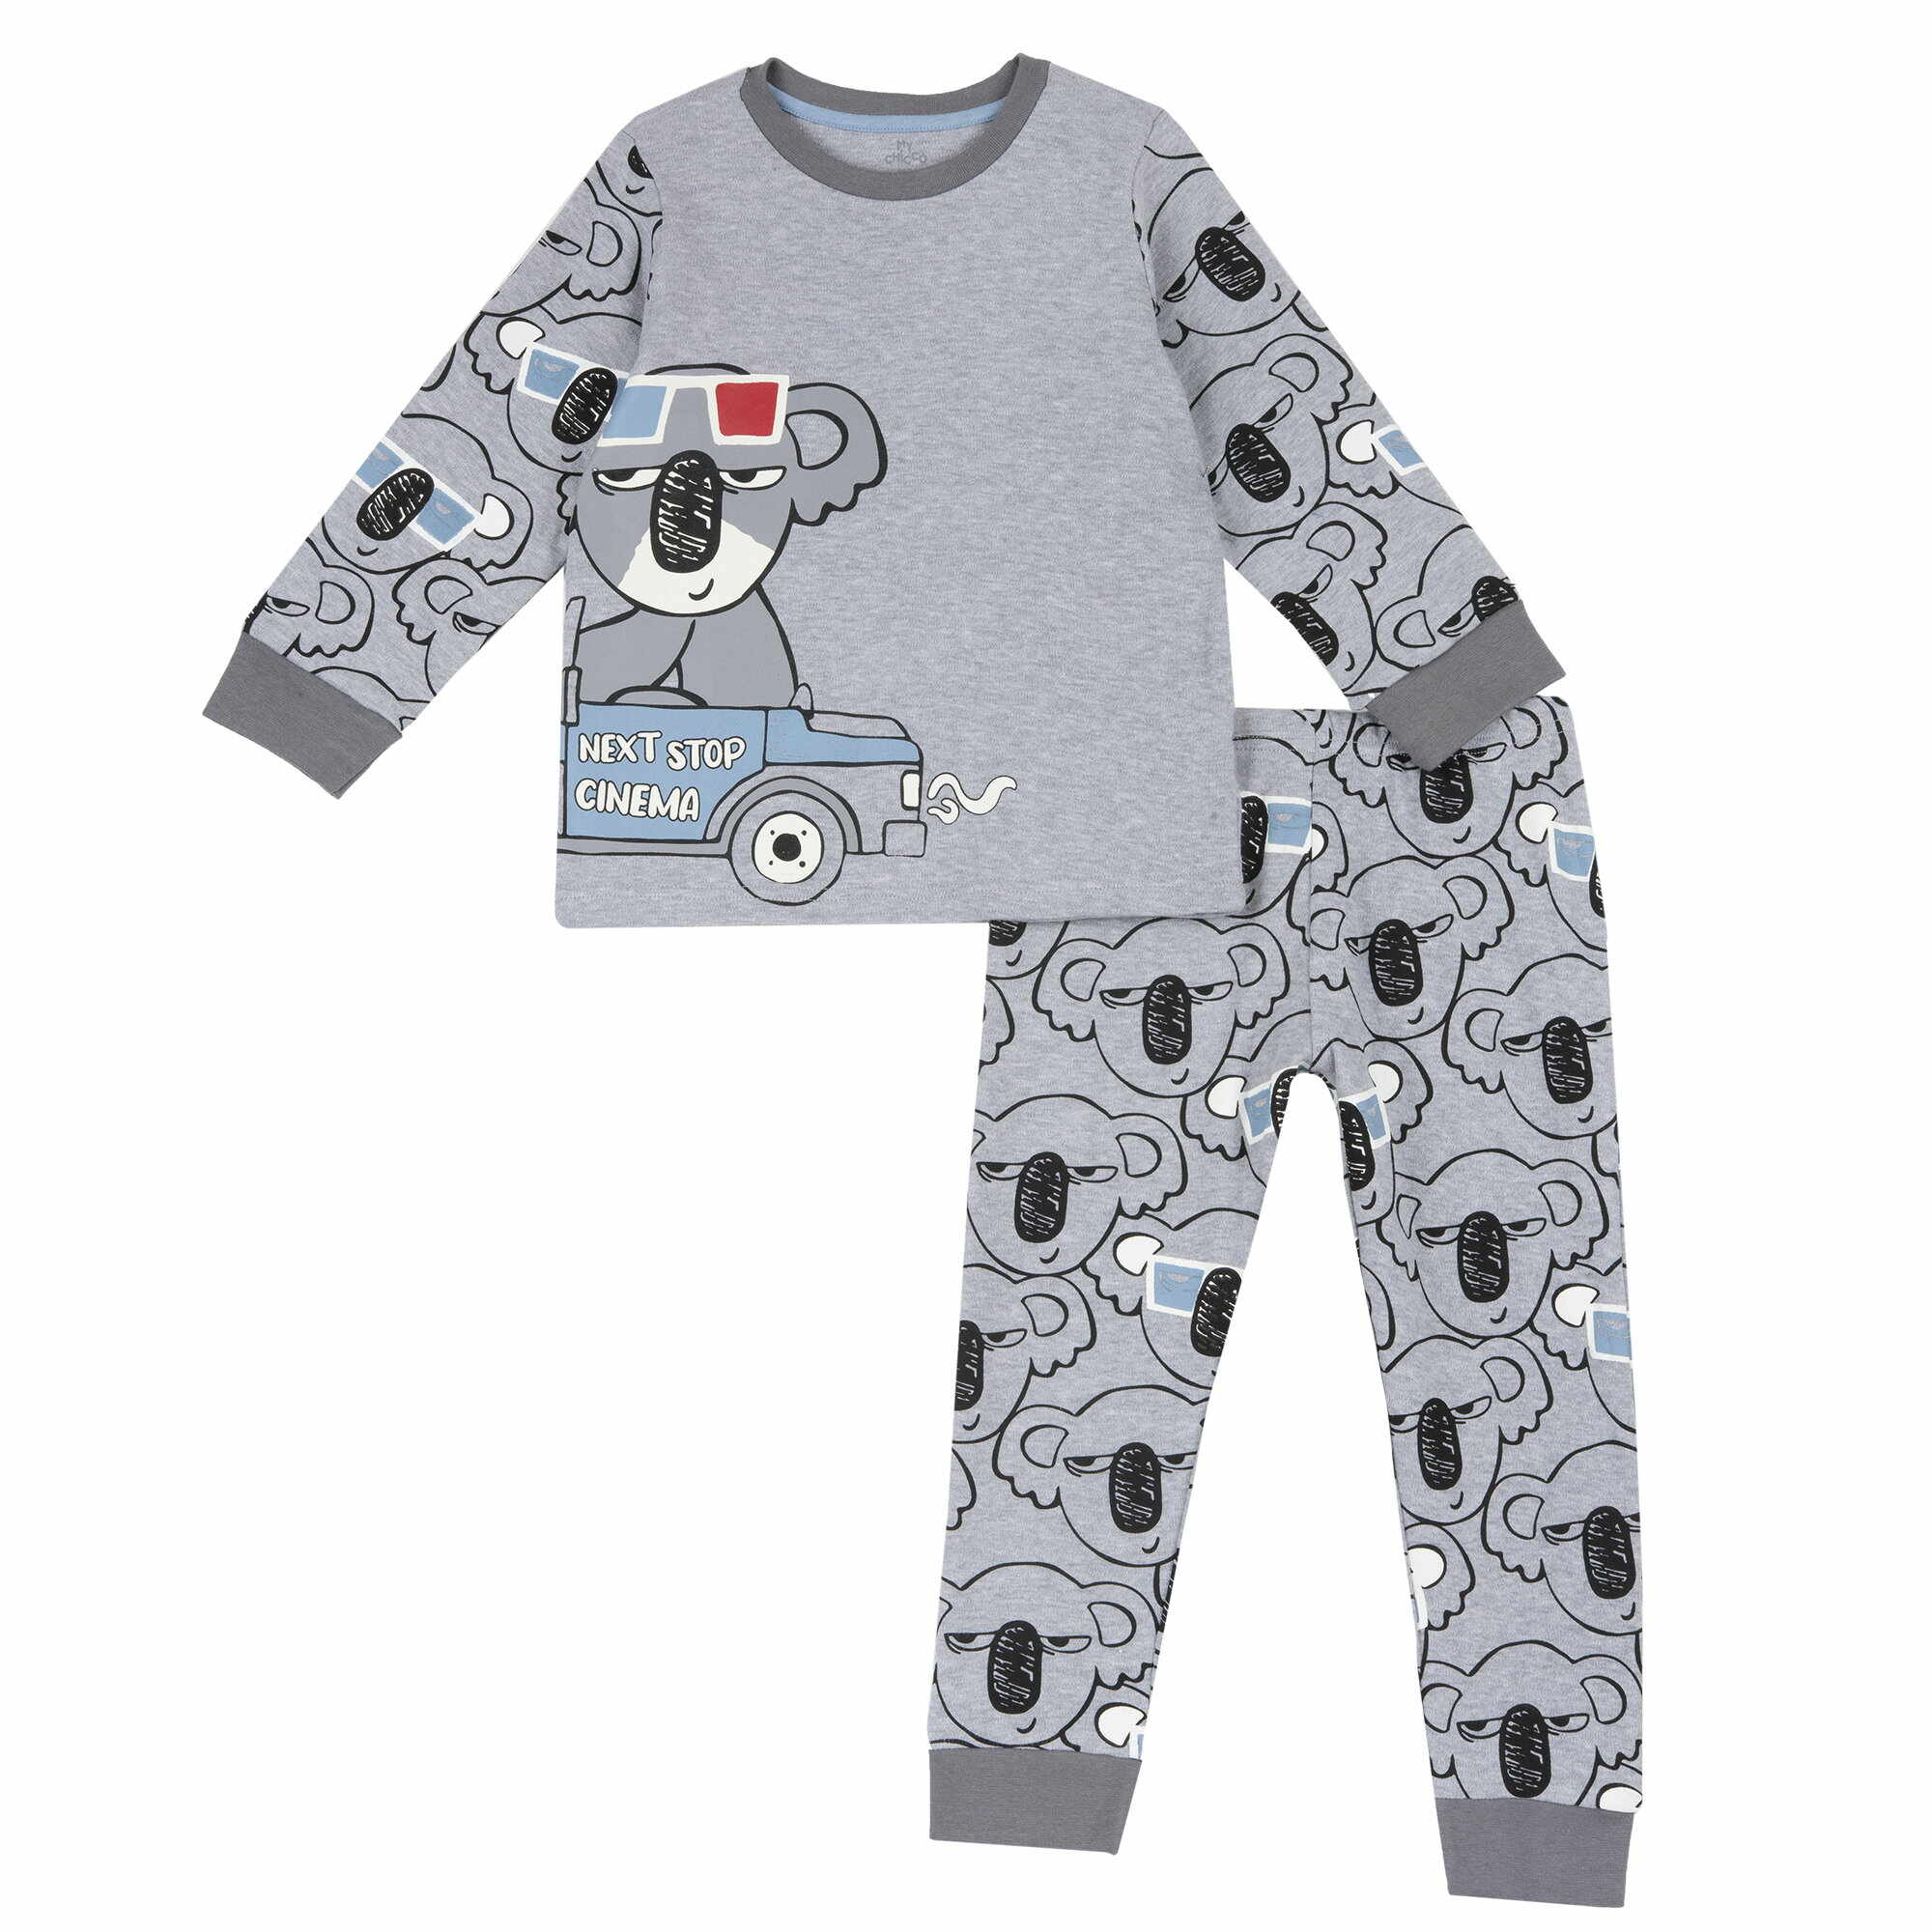 Pijama copii Chicco, gri, 31459-65MC